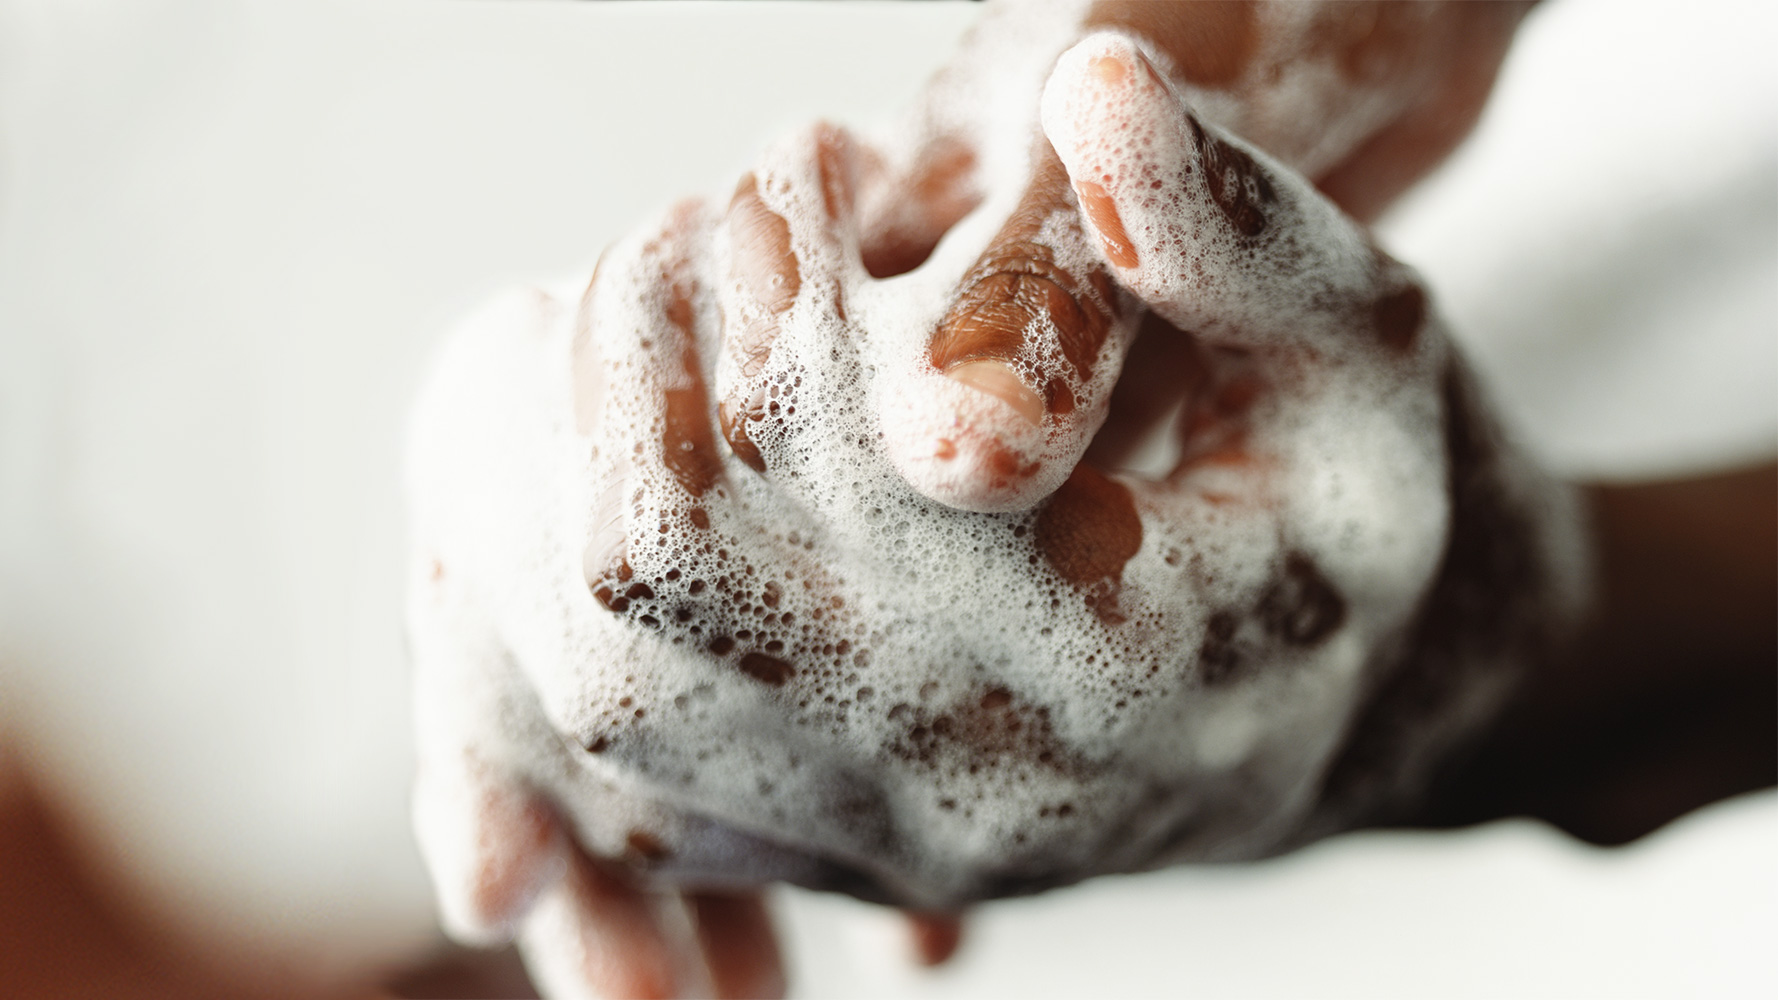 Lavage de mains avec du savon